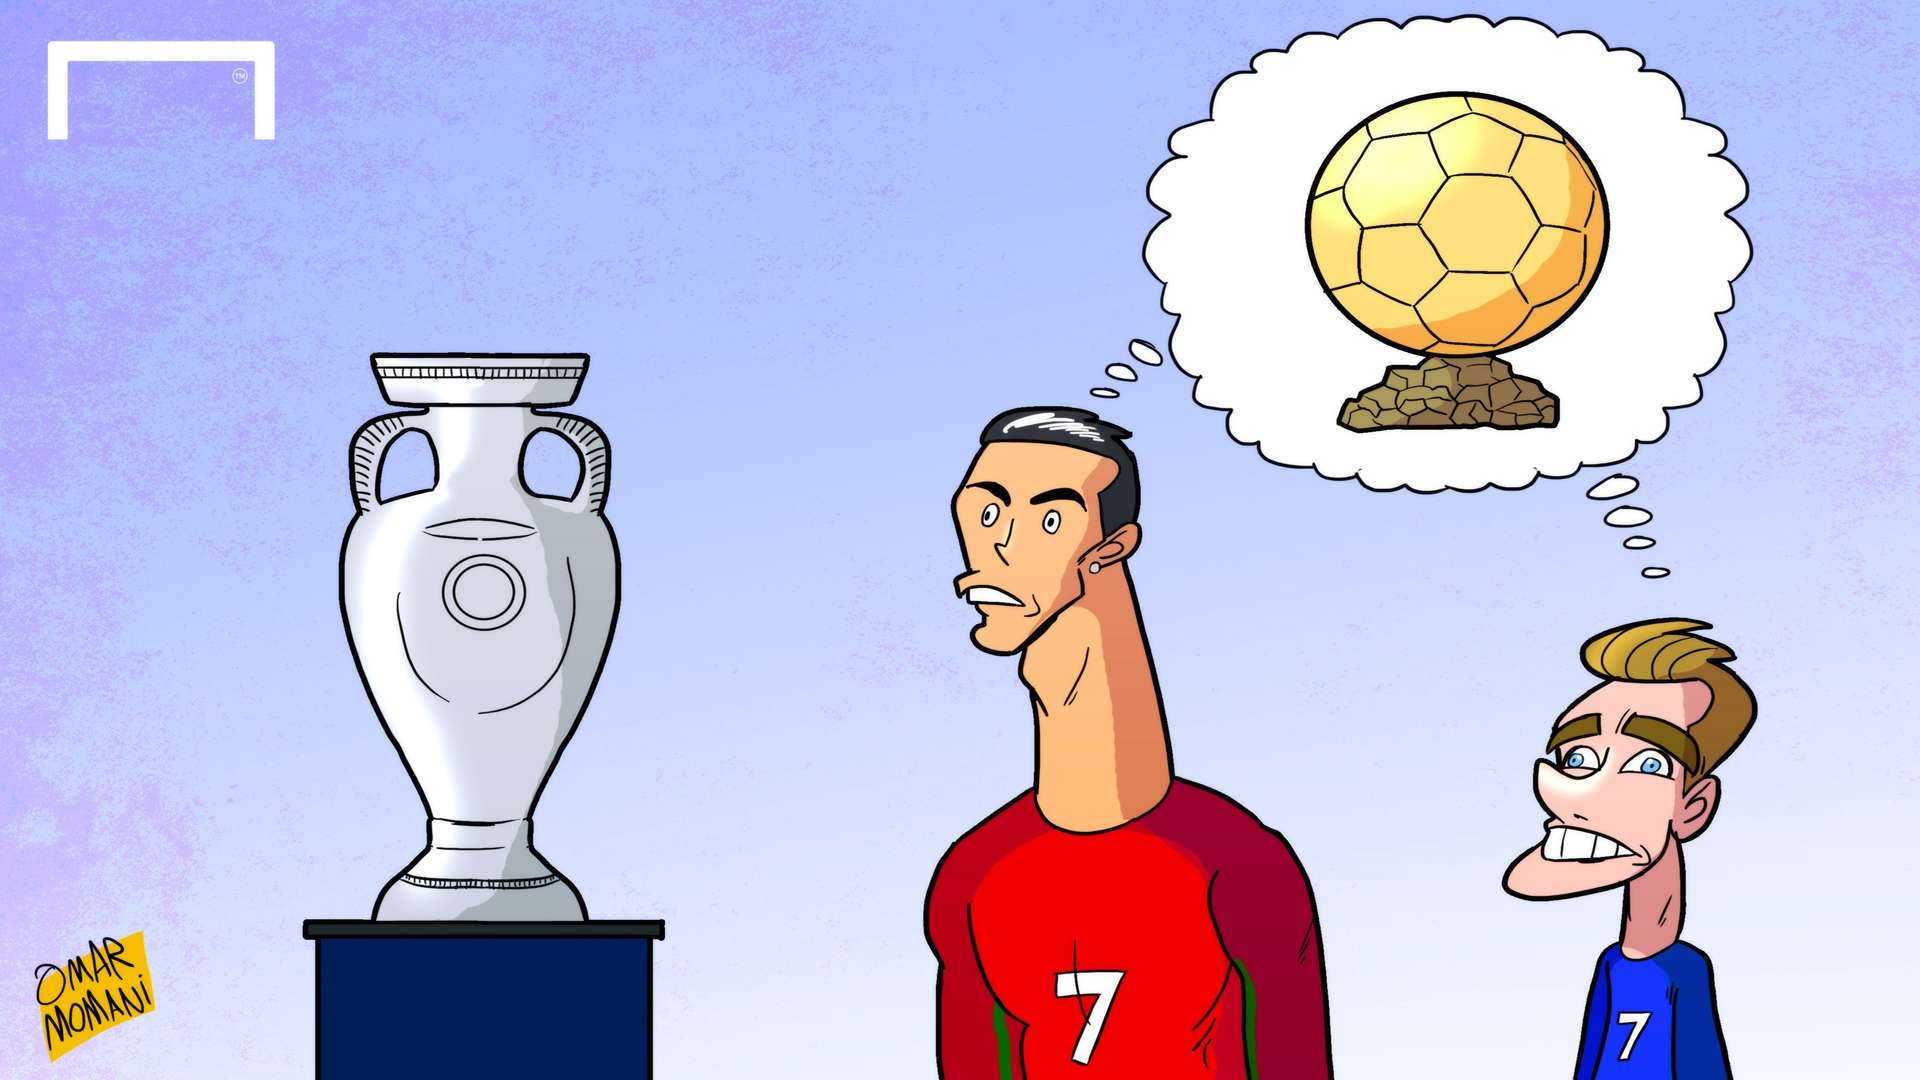 Cristiano Ronaldo Antoine Griezmann Euro 2016 Ballon d'Or cartoon